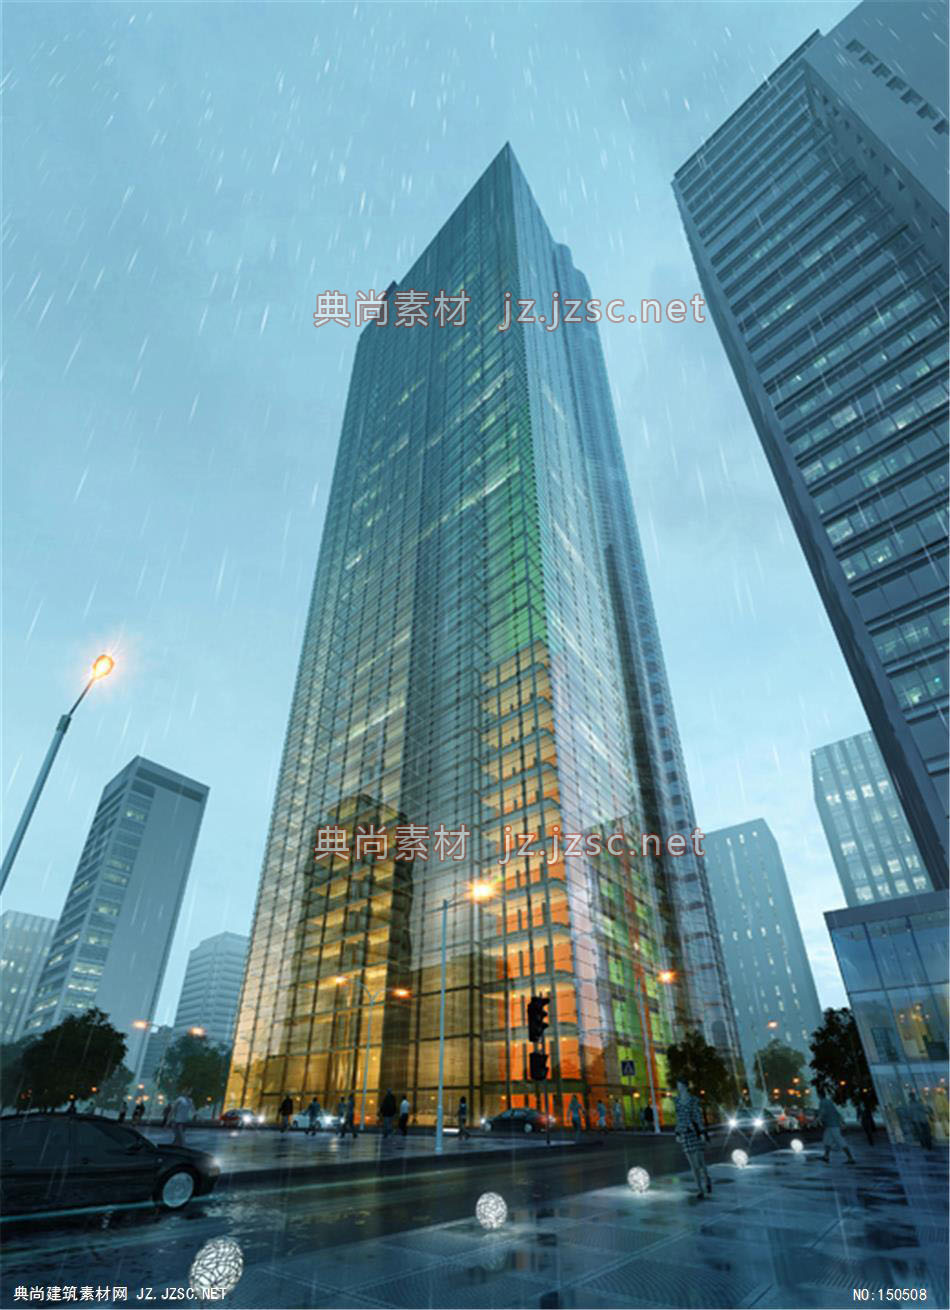 Torre 办公楼02高层办公效果图+交通及医疗建筑效果图